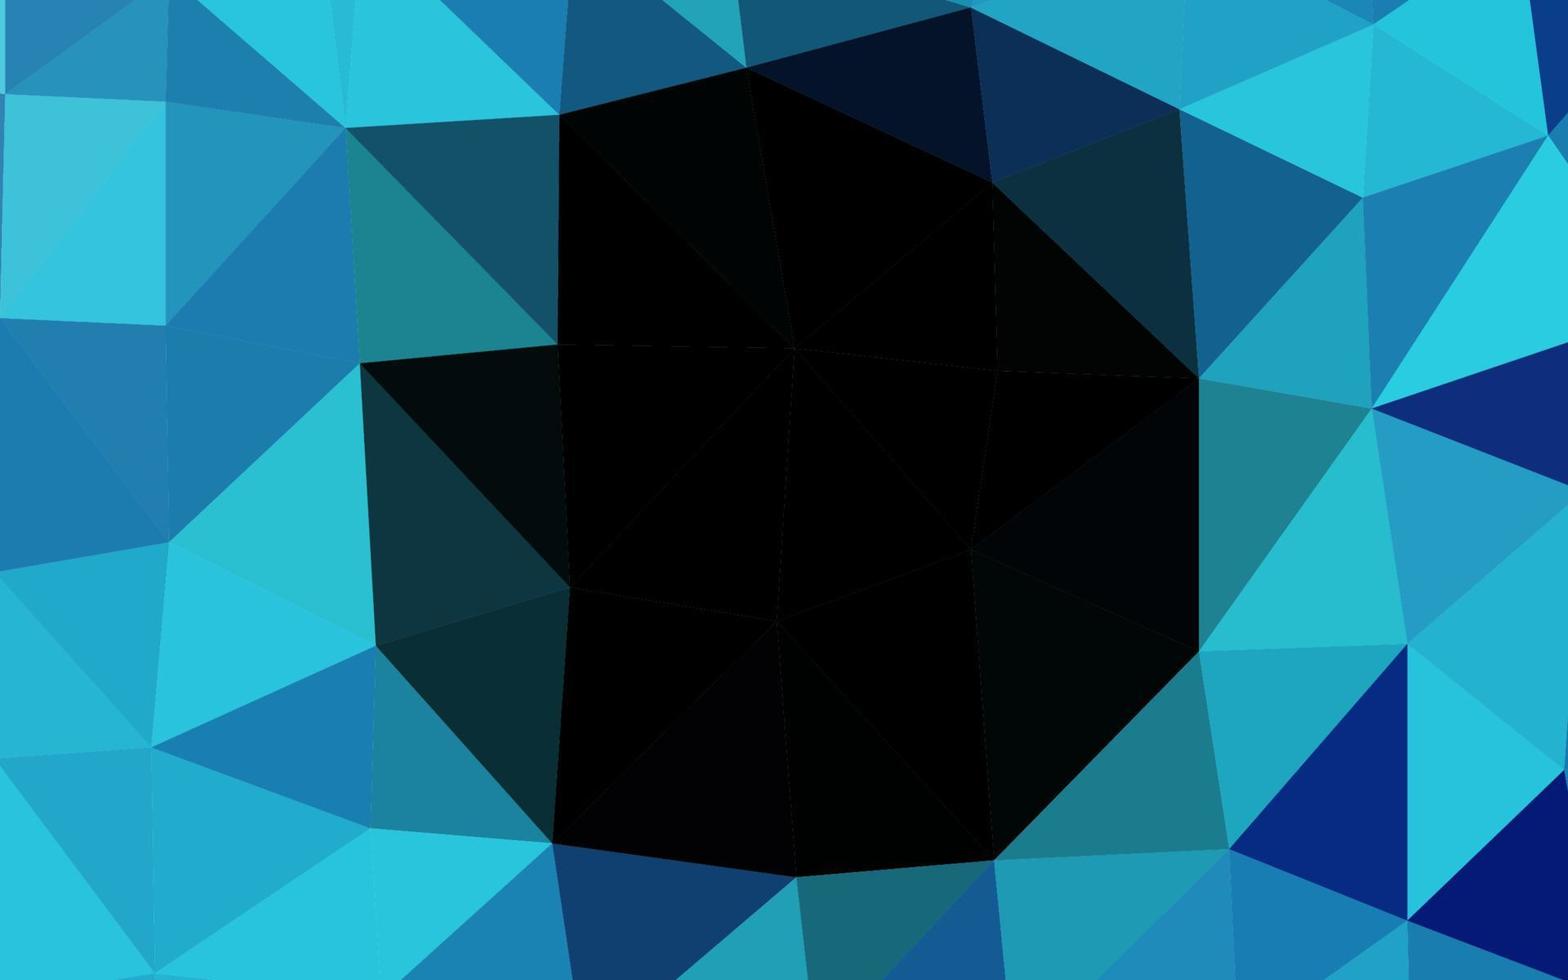 padrão poligonal de vetor azul escuro.